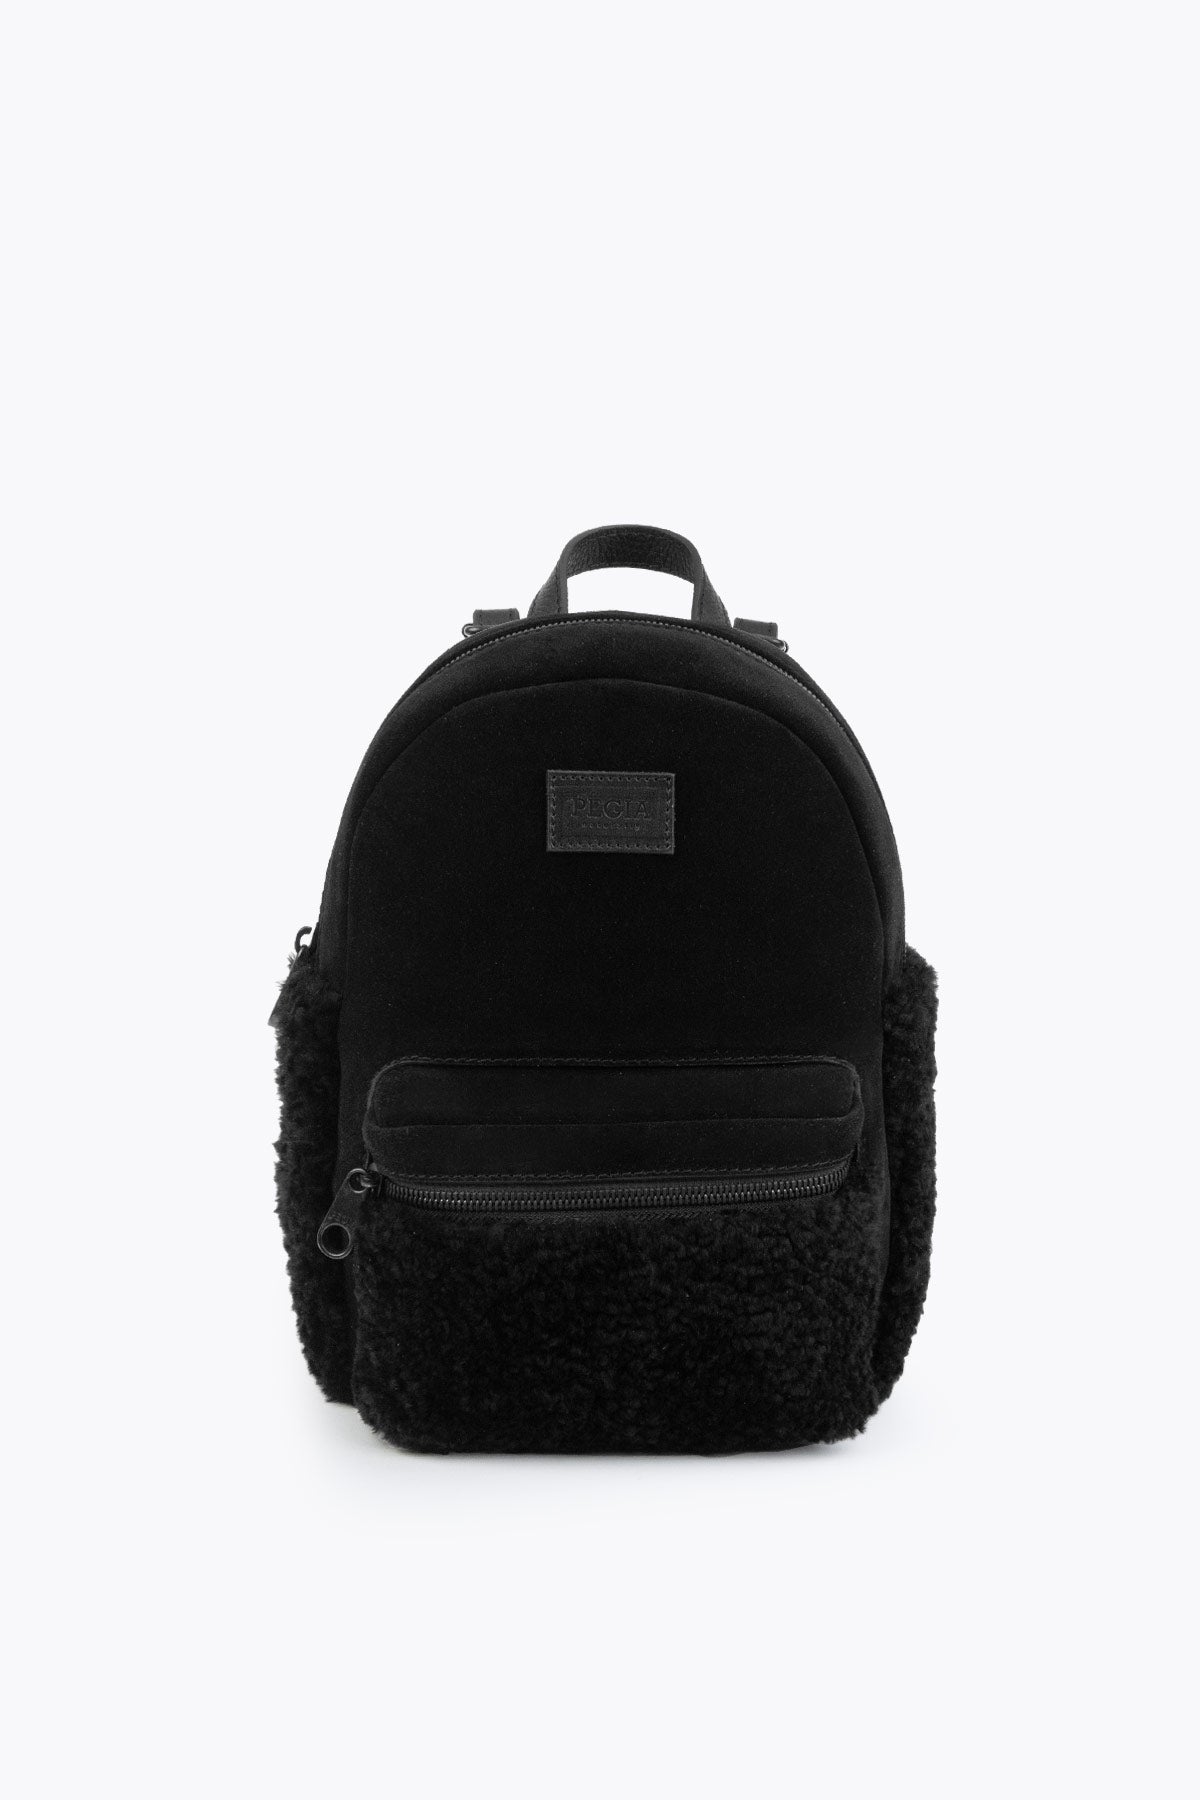 Pegia Moso Shearling Mini Backpack